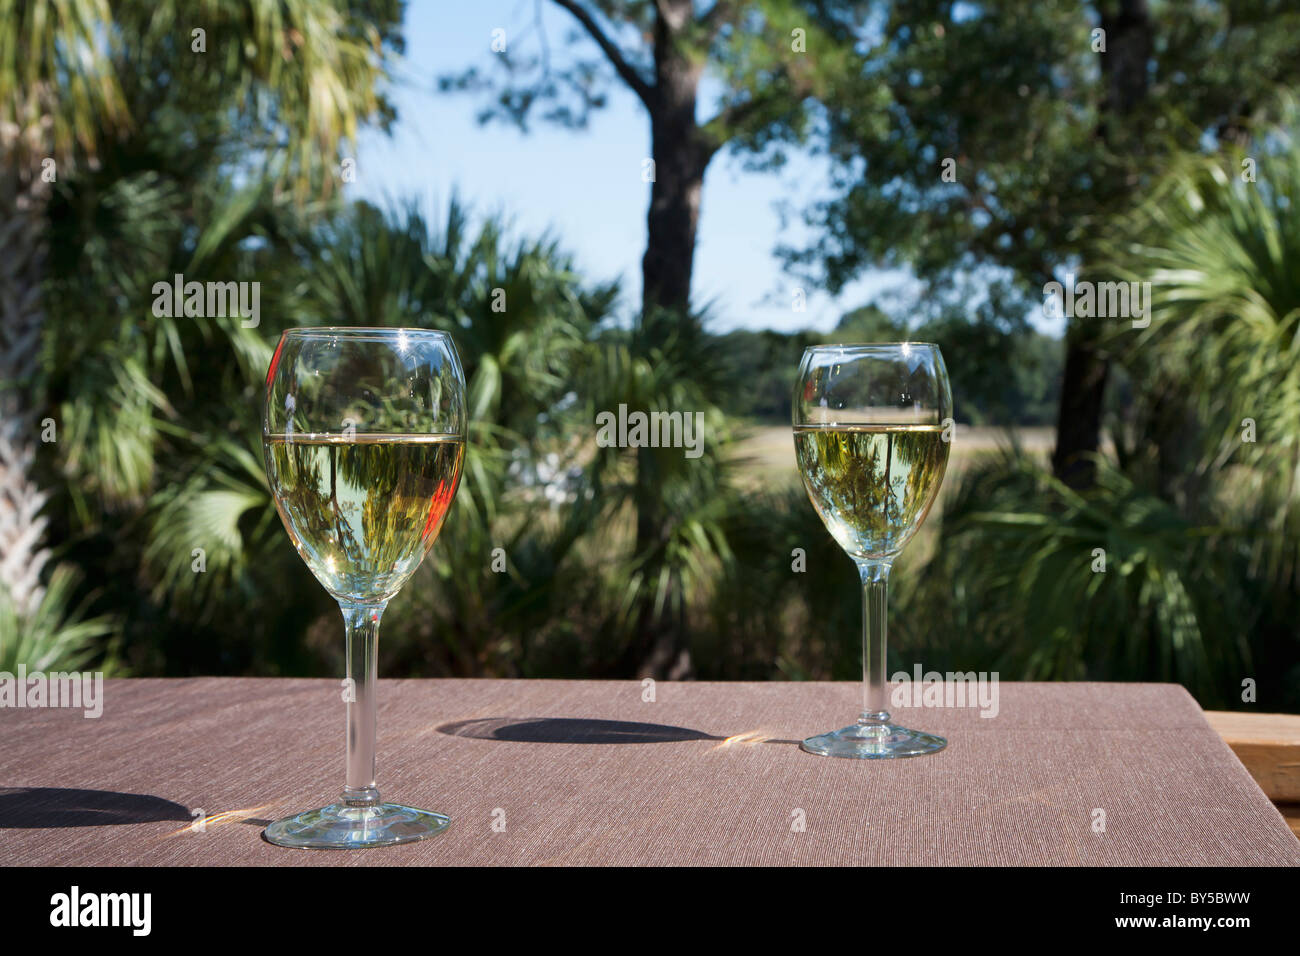 Deux verres de vin blanc sur une table, à l'extérieur Banque D'Images